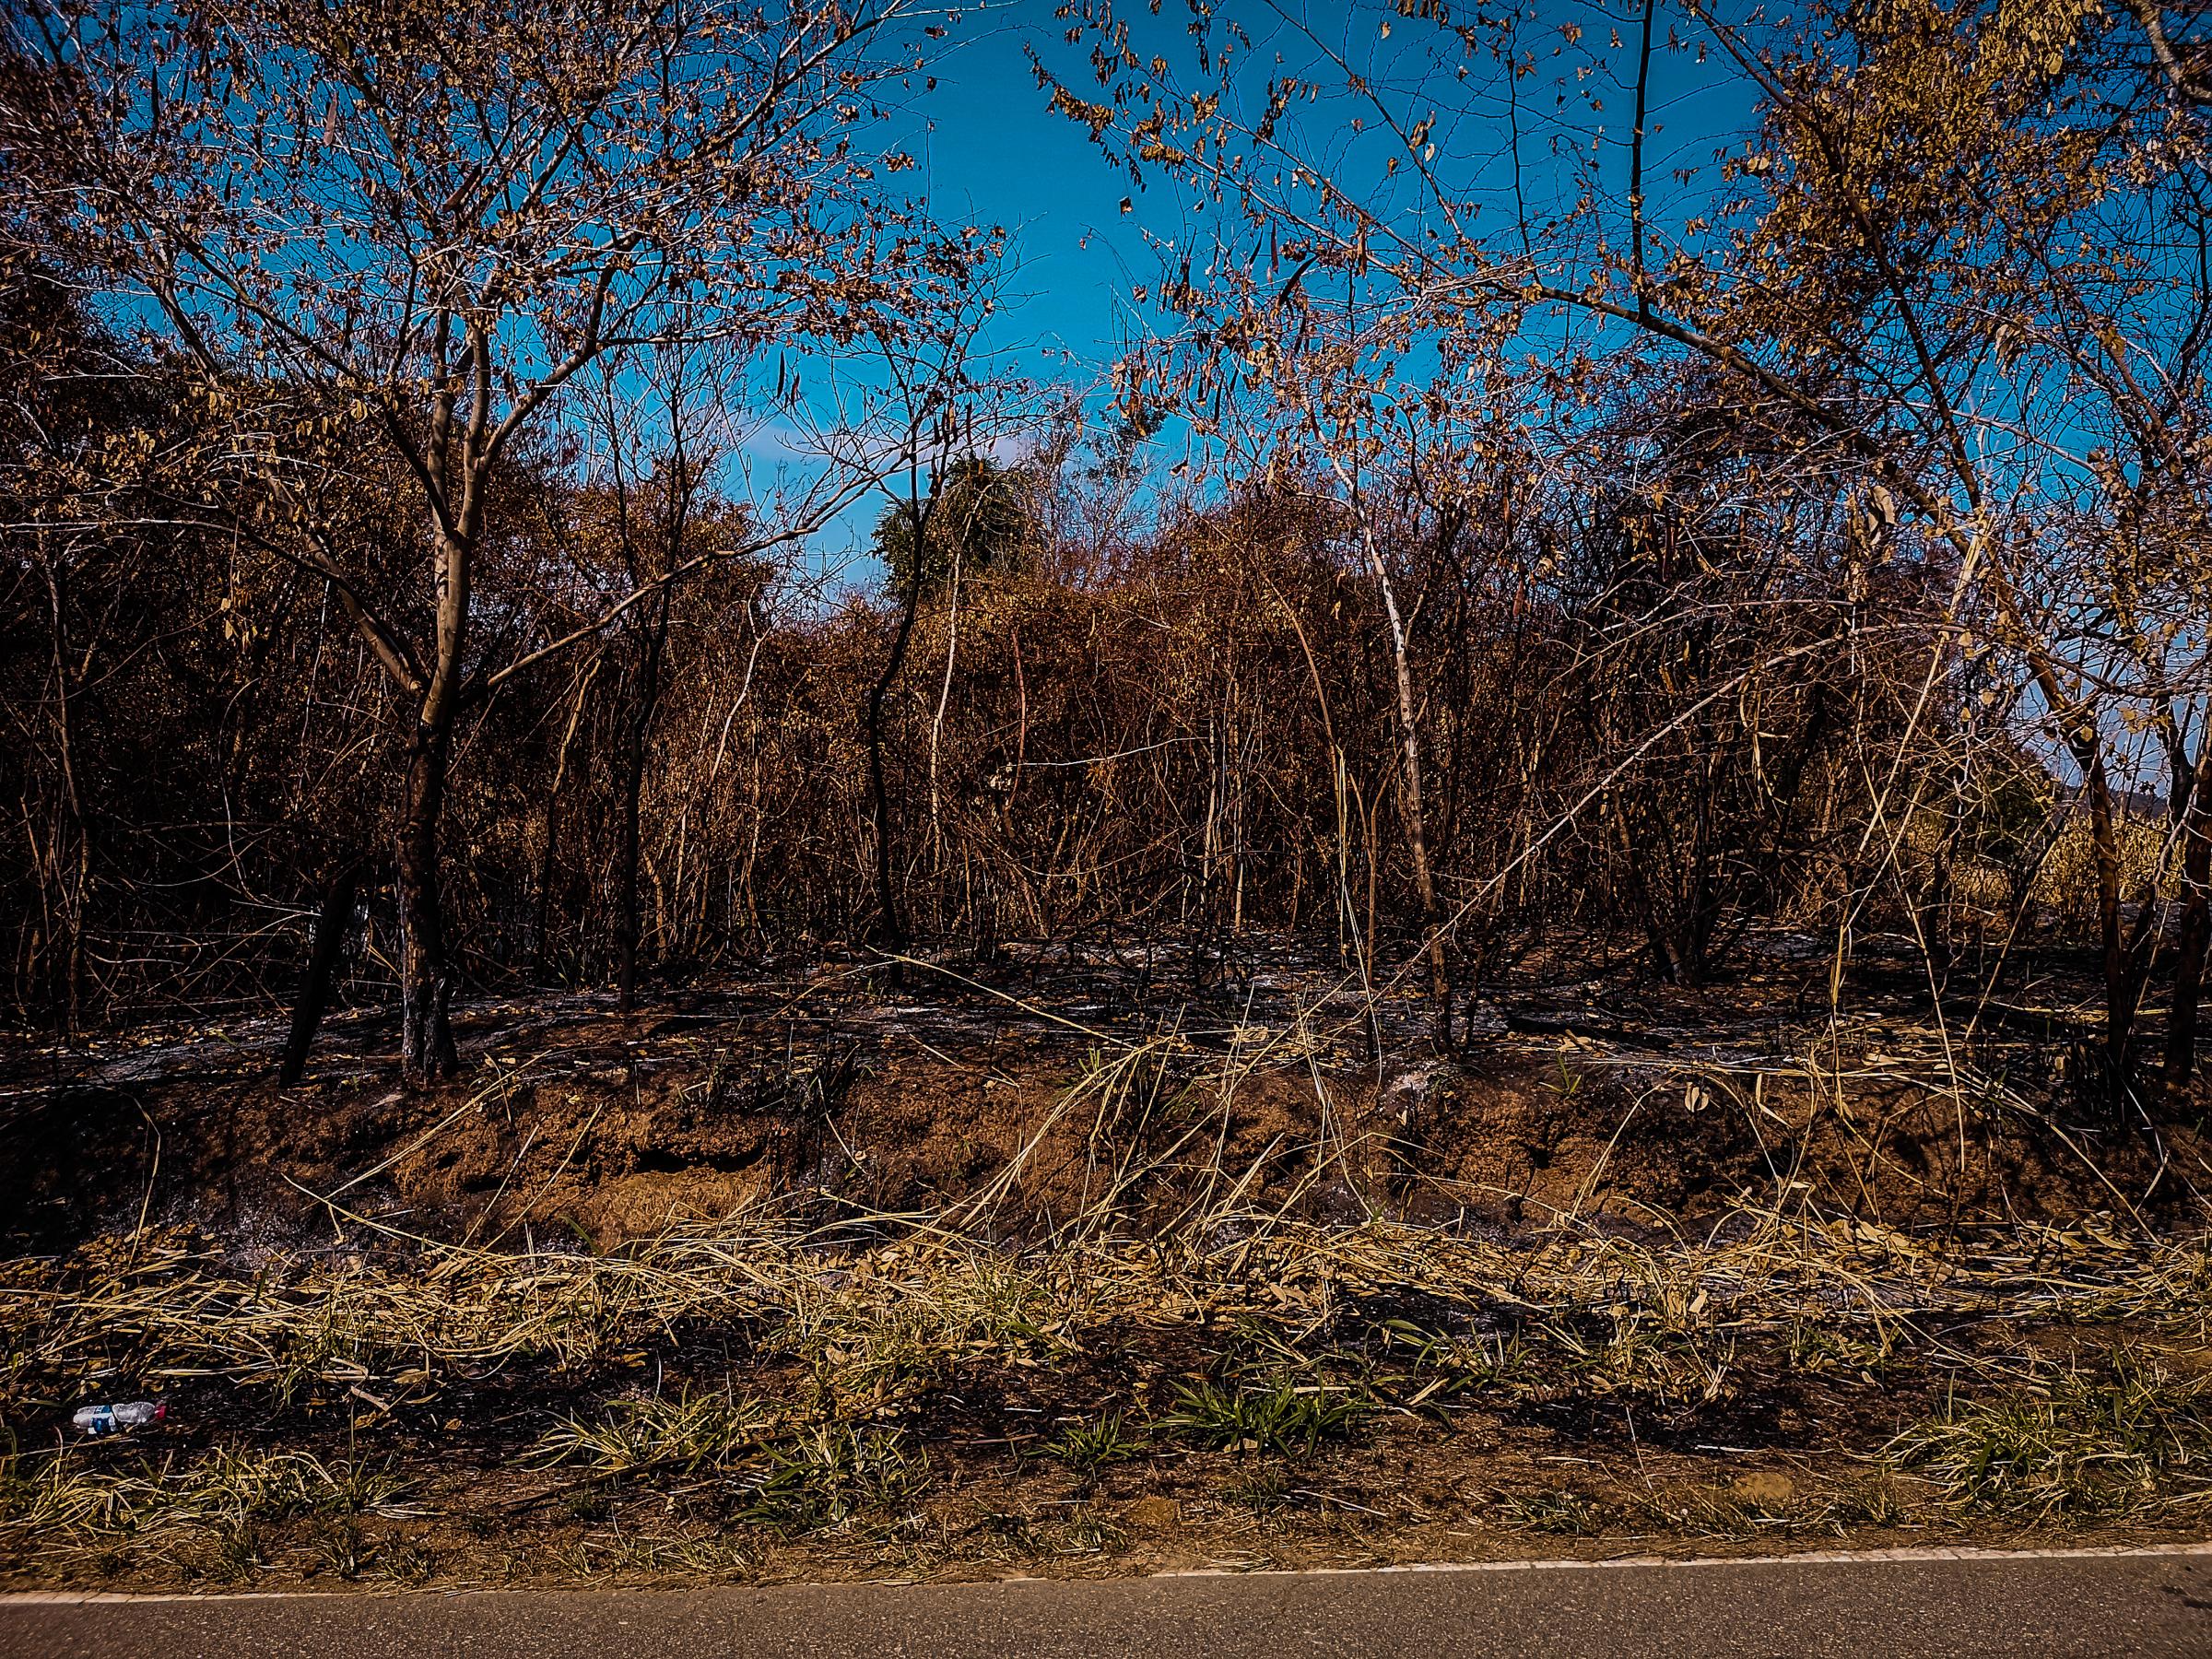 Inverno no cerrado - Part of the burned vegetation of Morro de Ipanema near...